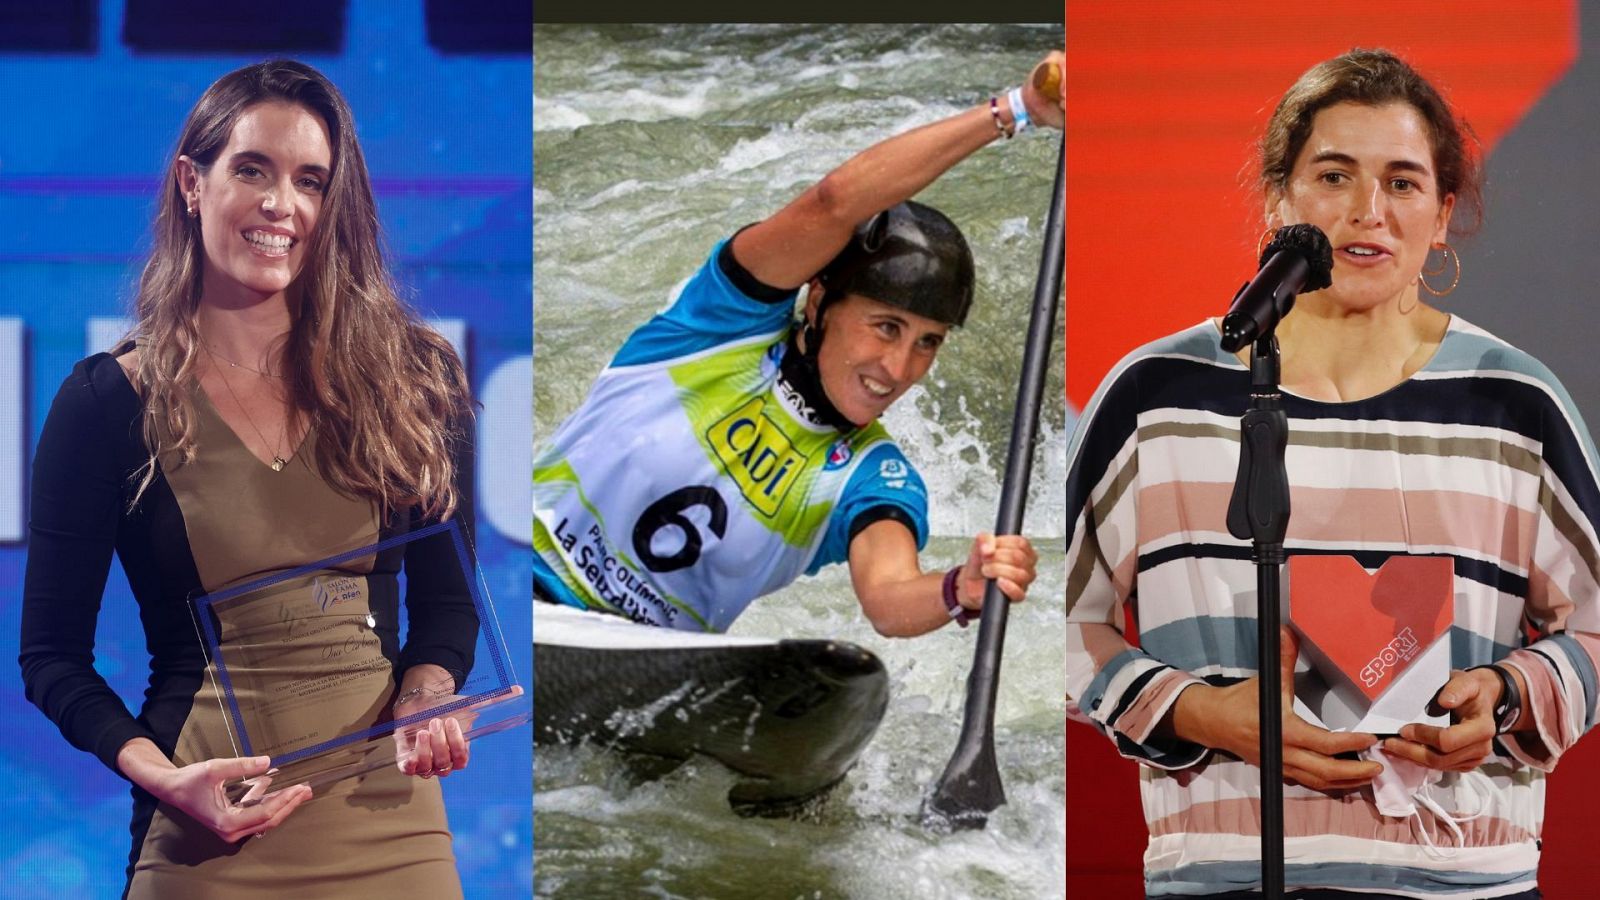 Ser madre y deportista olímpica, la experiencia de Ona Carbonell, Maialen Chourraut y Nuria Villarrubla